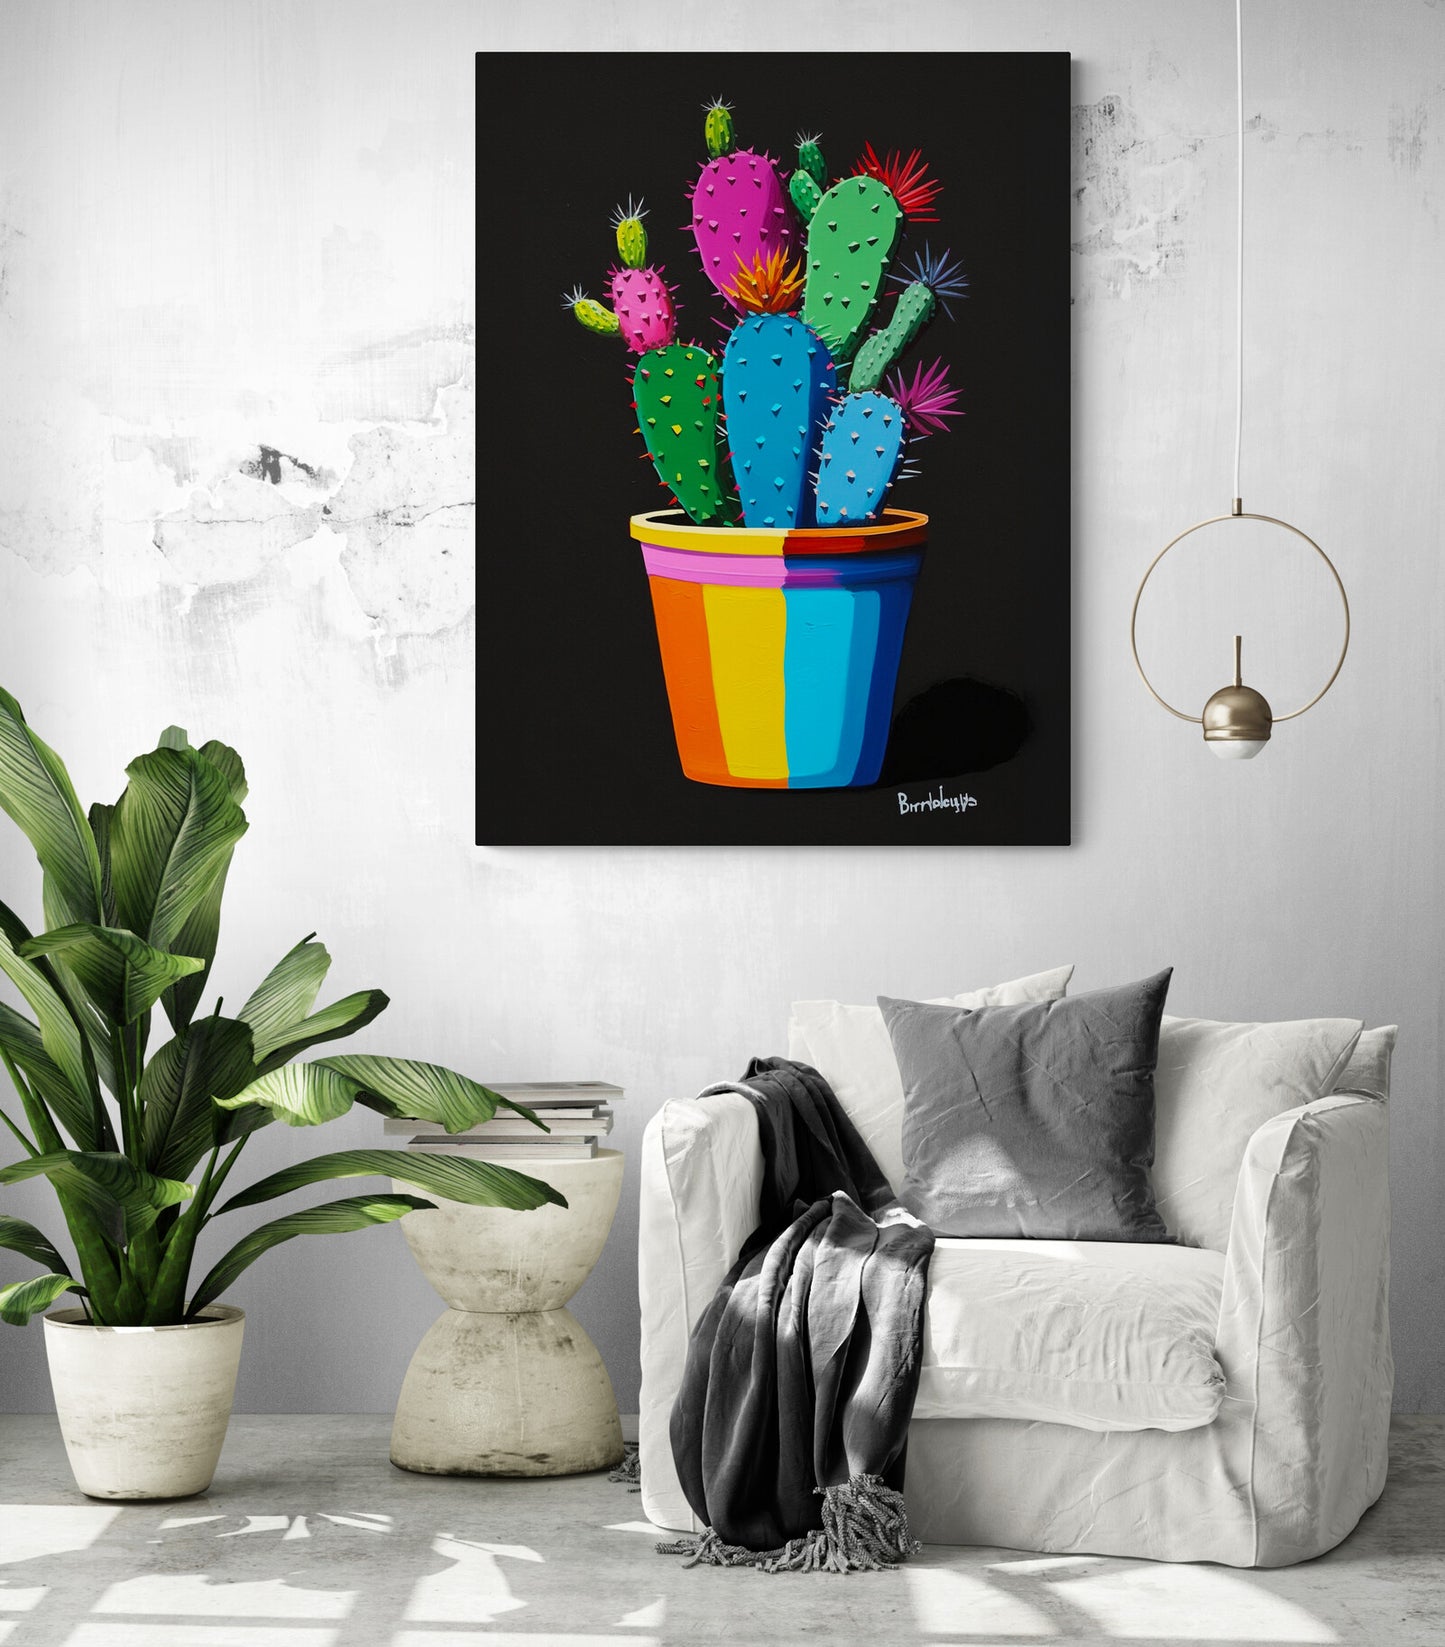 Tableau Cactus vibrant surplombant un fauteuil blanc, ajoutant un éclat audacieux à la décoration intérieure.